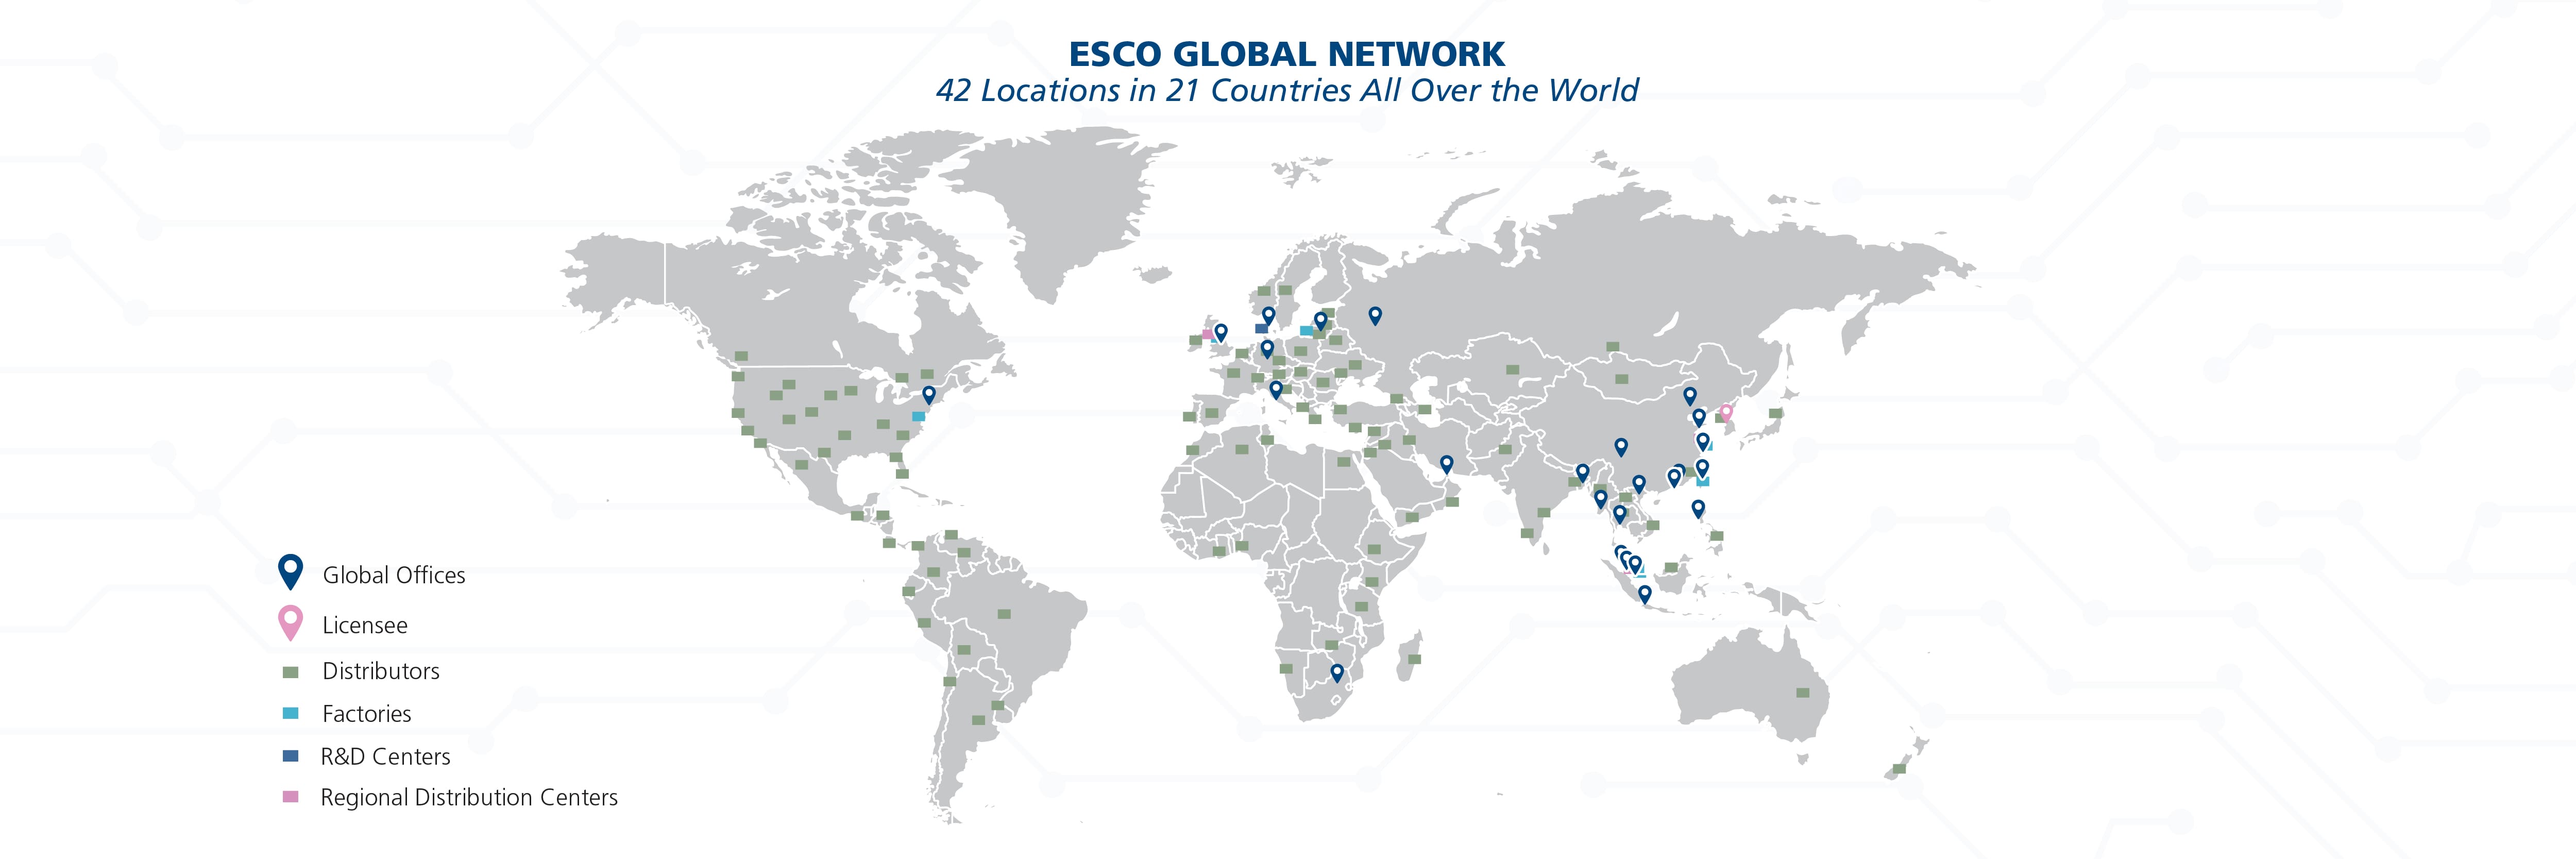 Esco Global Network